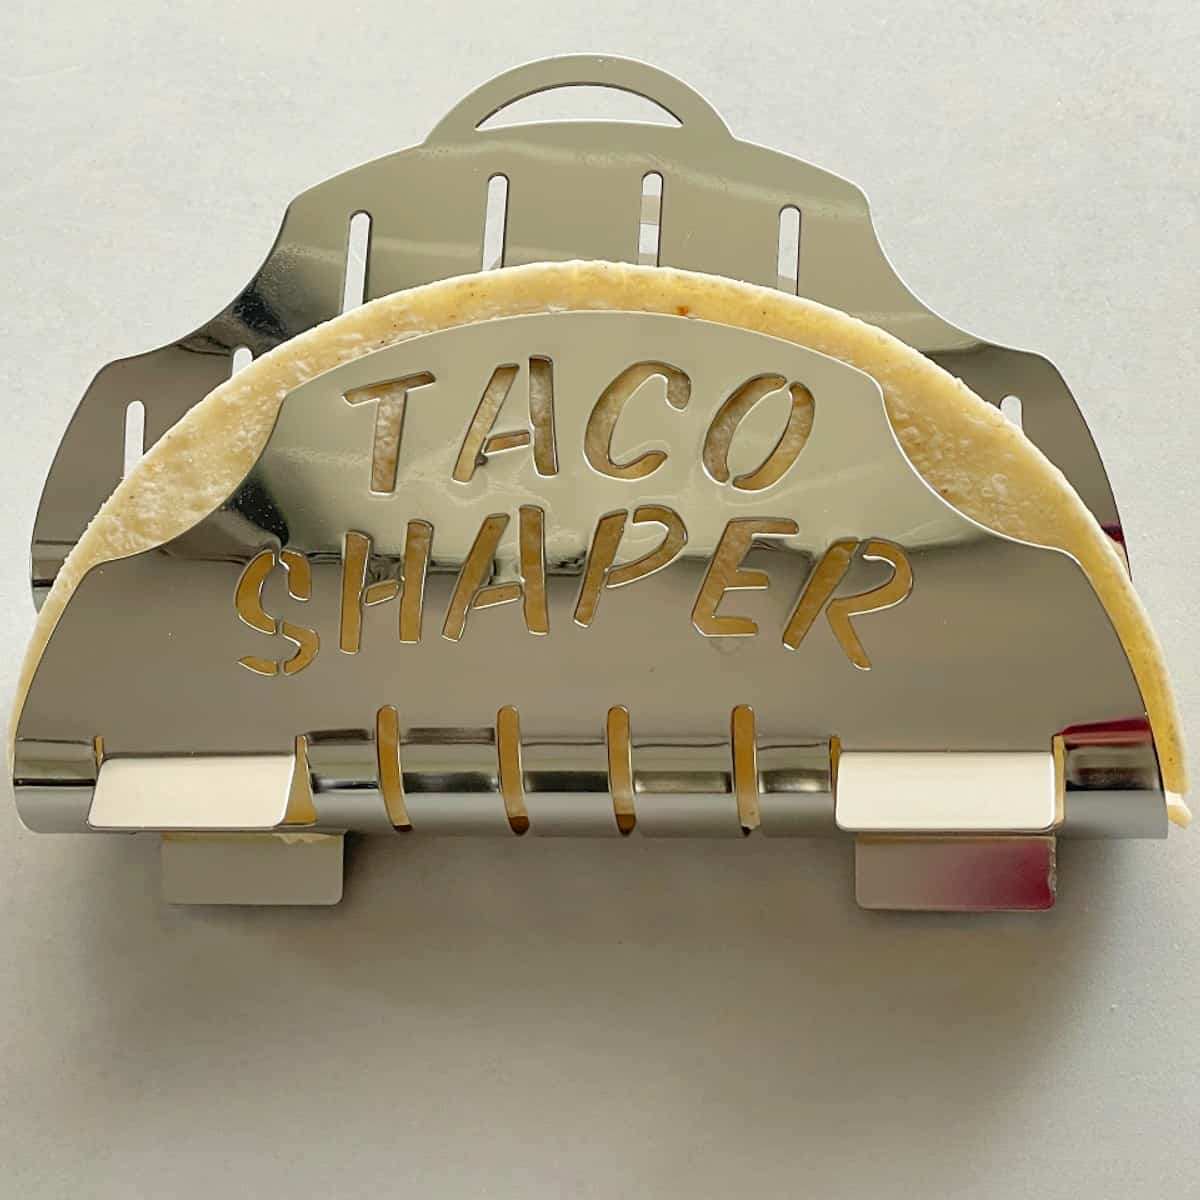 taco shaper with tortilla.